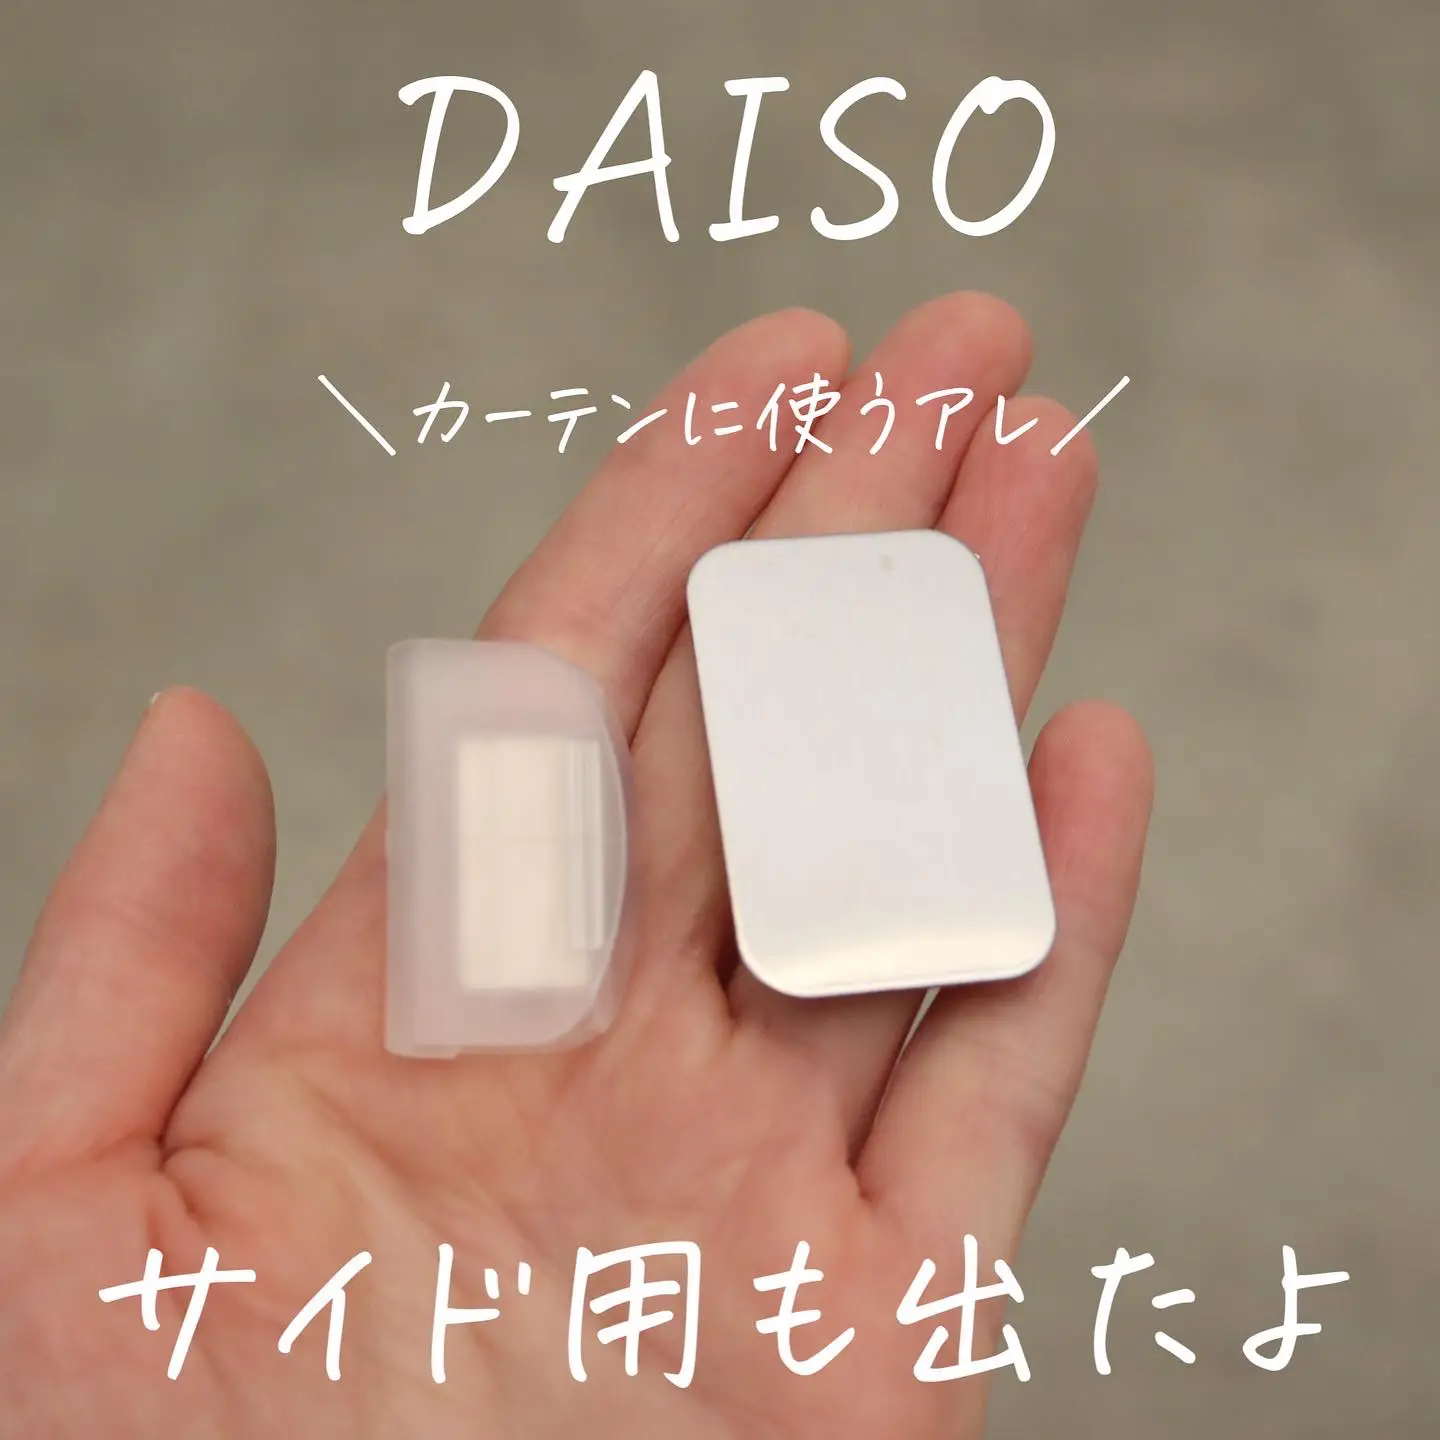 DAISO 磁石でパチッとカーテンクリップ | 暮らしの音_micoが投稿した